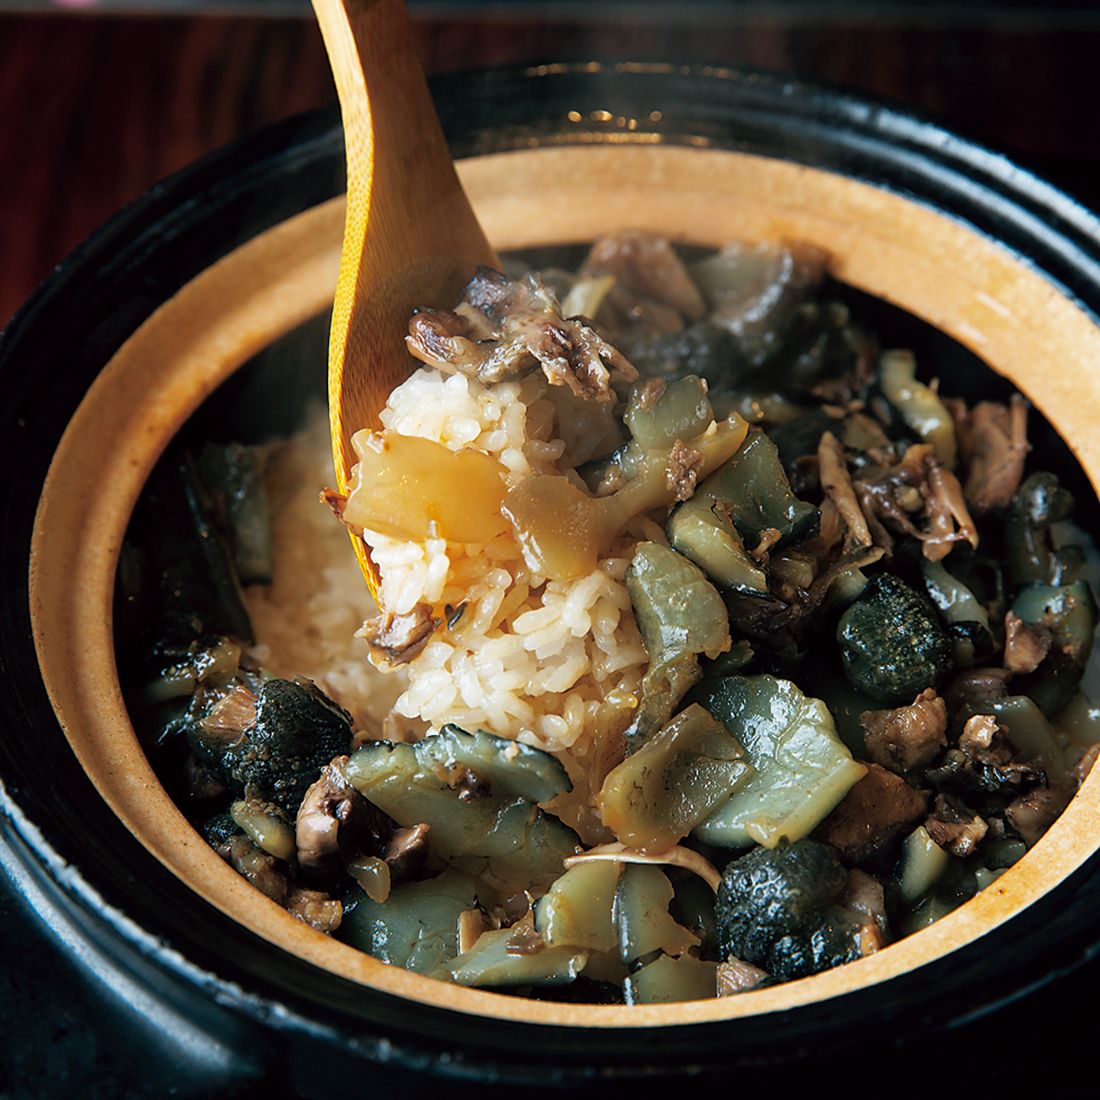 土鍋の炊き立てご飯にスッポンを混ぜて仕上げる〆の食事。